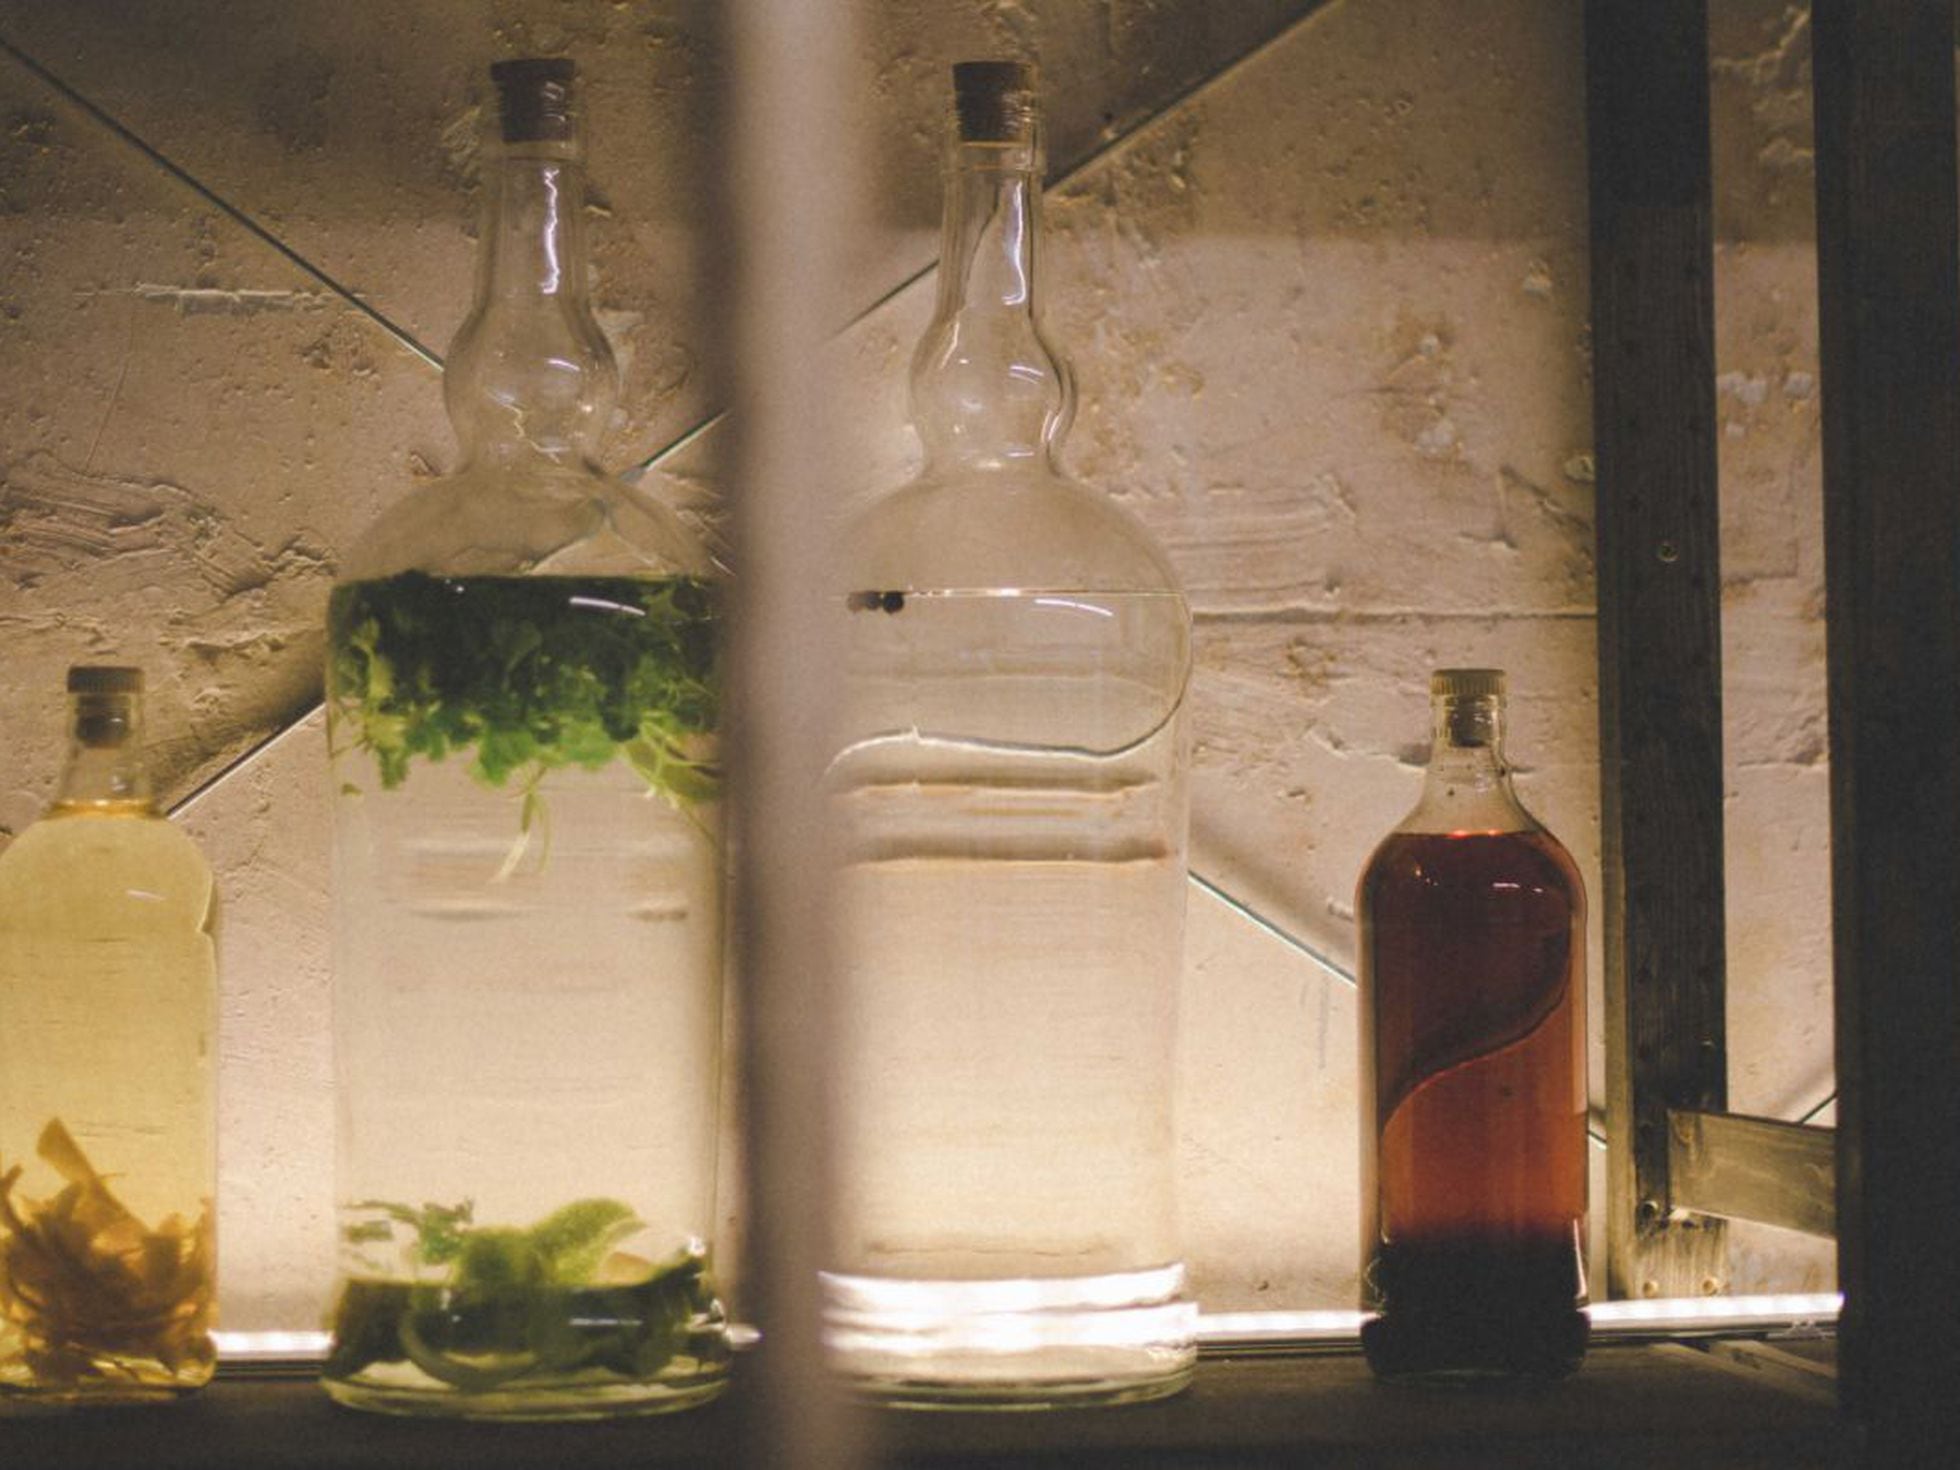 Macerar alcohol en casa | El Comidista | Gastronomía | EL PAÍS